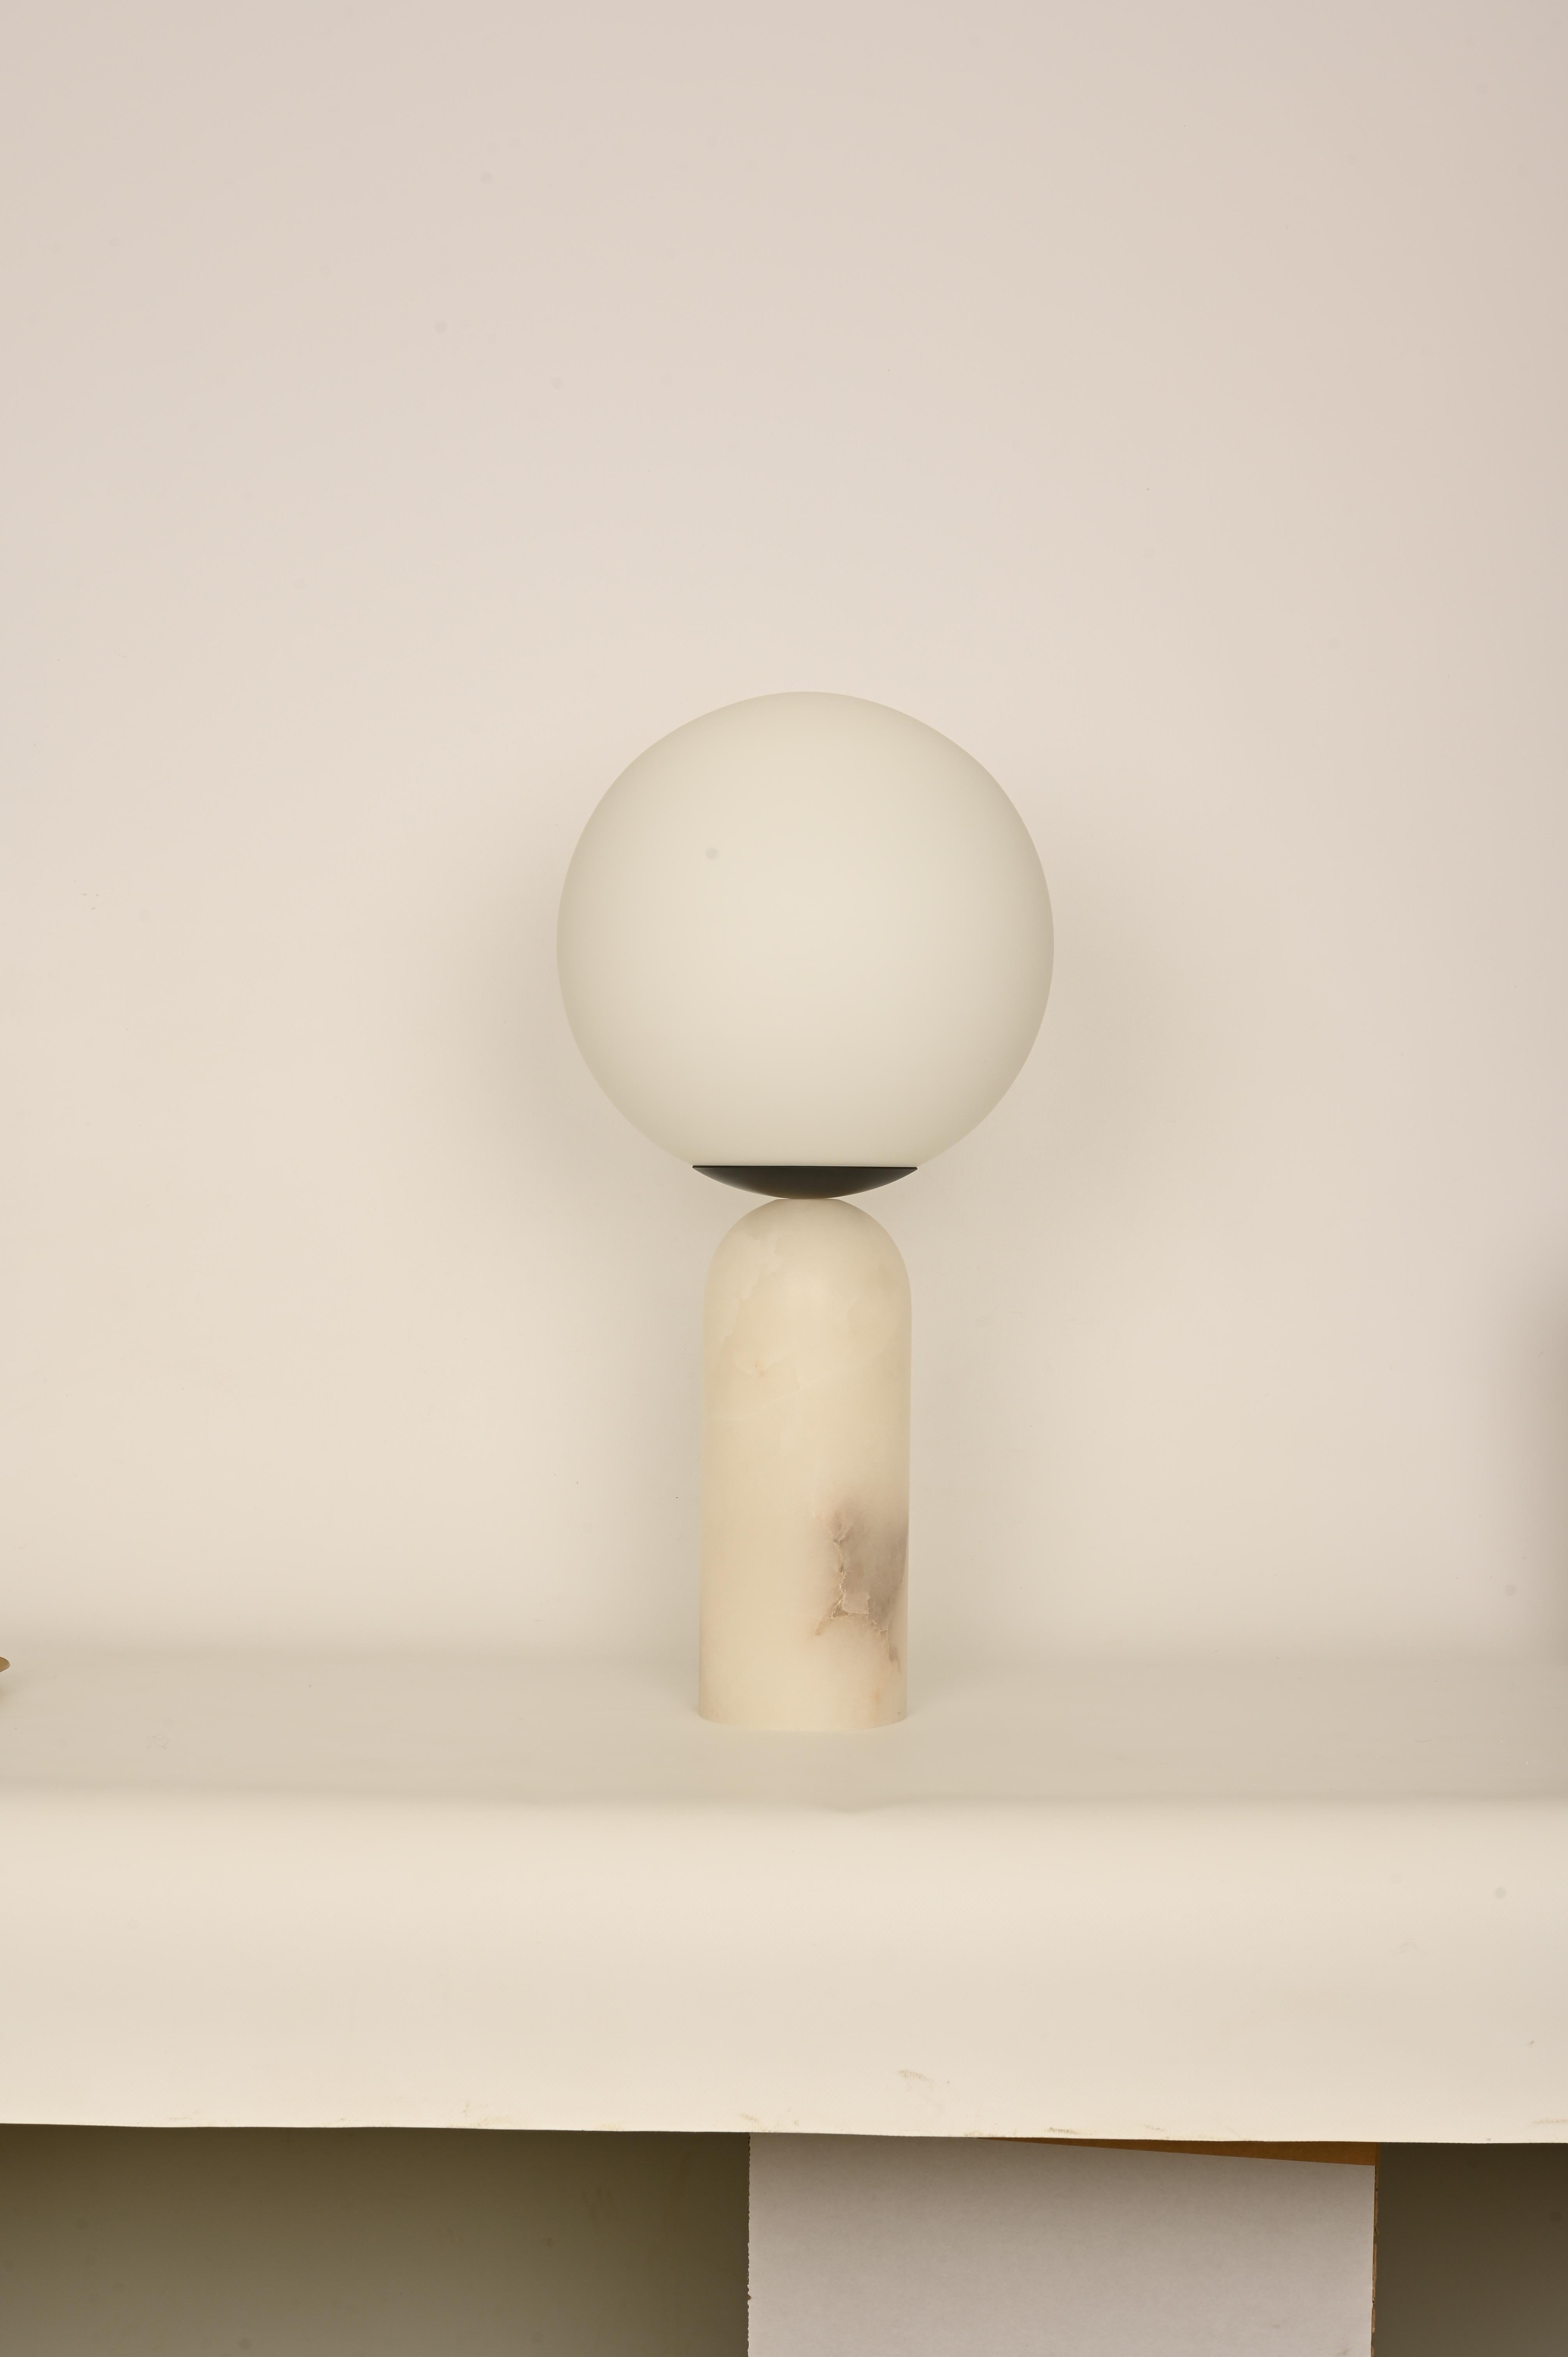 Lámpara de mesa Atlas de alabastro blanco y acero by Simone & Marcel
Dimensiones: Ø 30 x A 60 cm.
Materiales: Vidrio, acero ennegrecido y alabastro blanco.

También disponible en diferentes opciones y acabados de mármol, madera y alabastro. Opciones